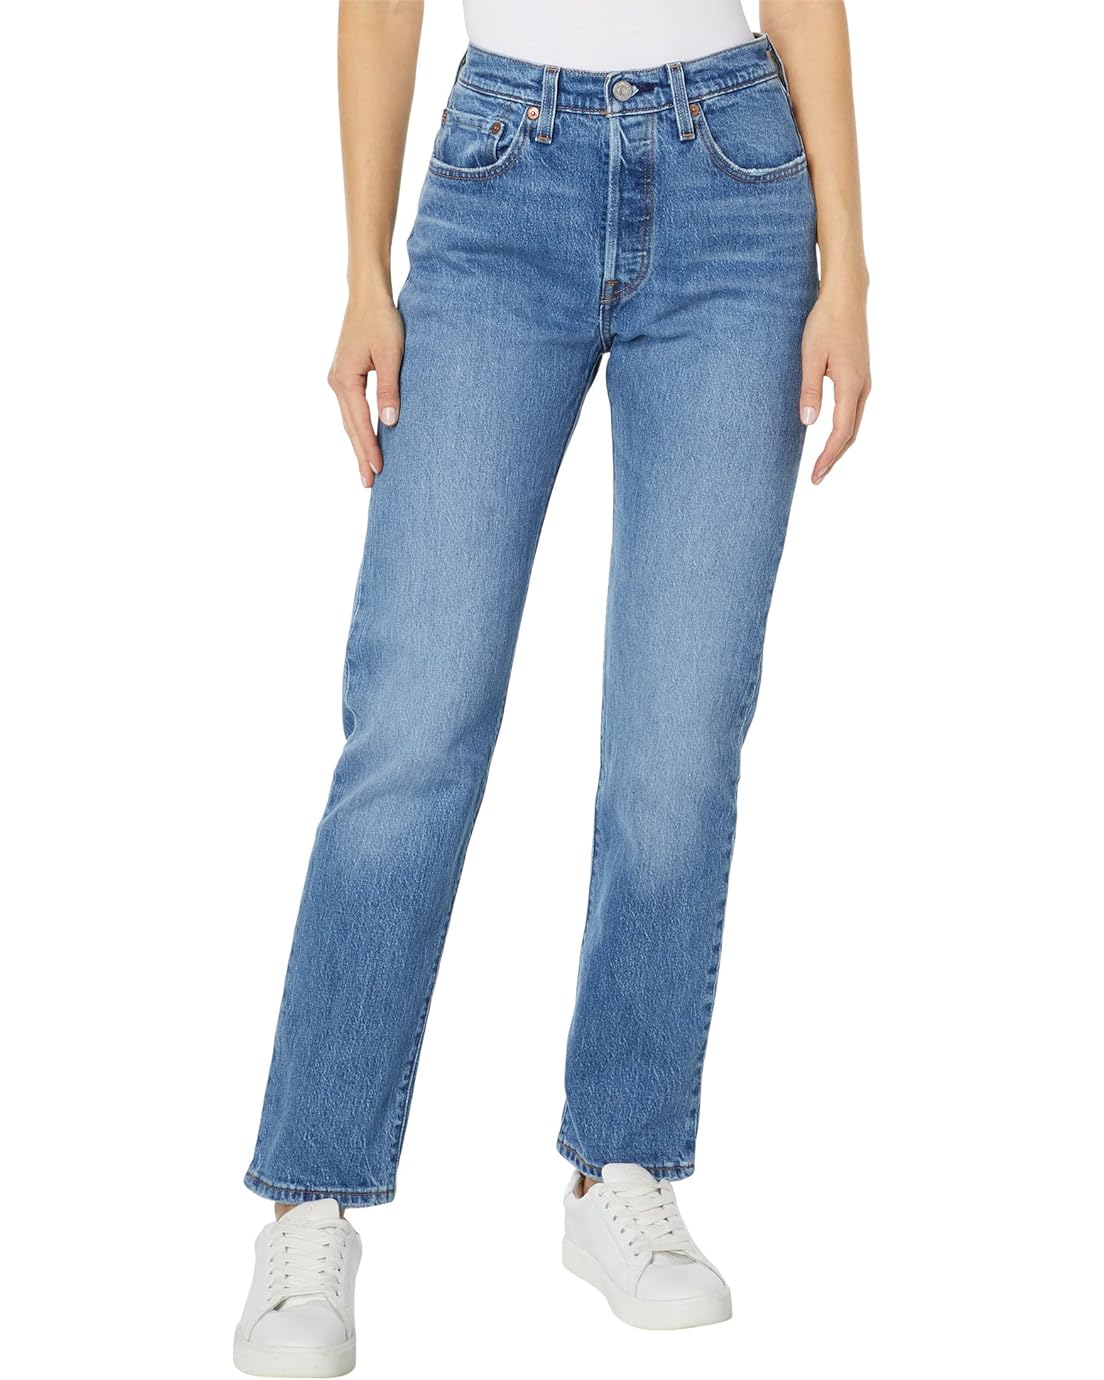 Levis Womens 501 Jeans